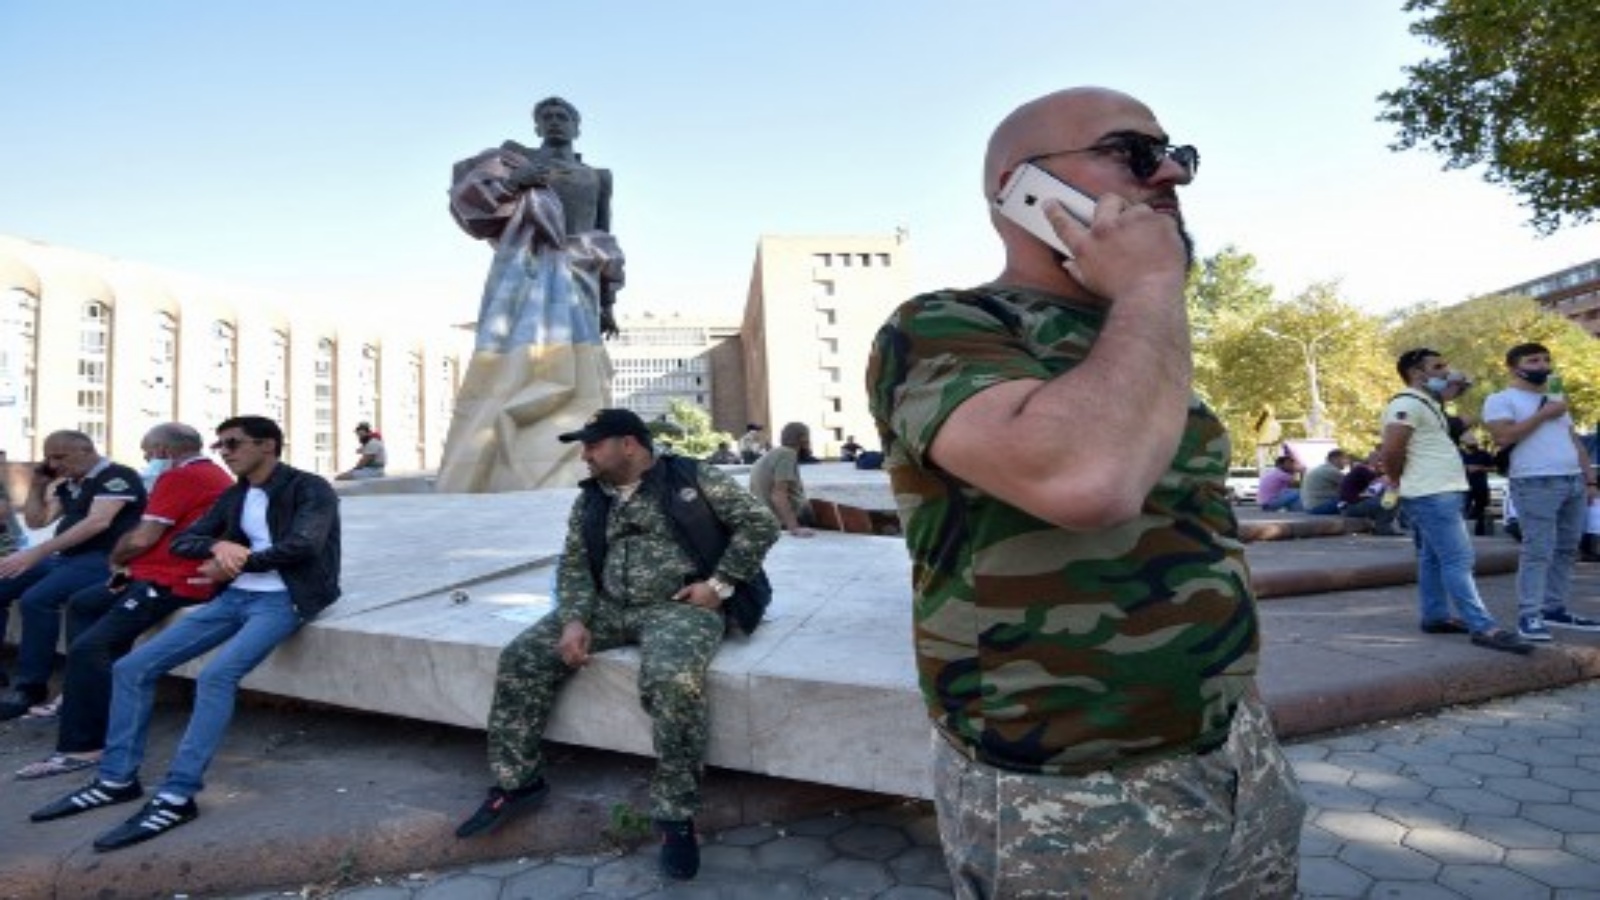 المتطوعون والمحاربون القدامى ، المستعدون للذهاب إلى خط المواجهة في ناغورني كاراباخ ، يجتمعون في يريفان في 27 سبتمبر 2020. 